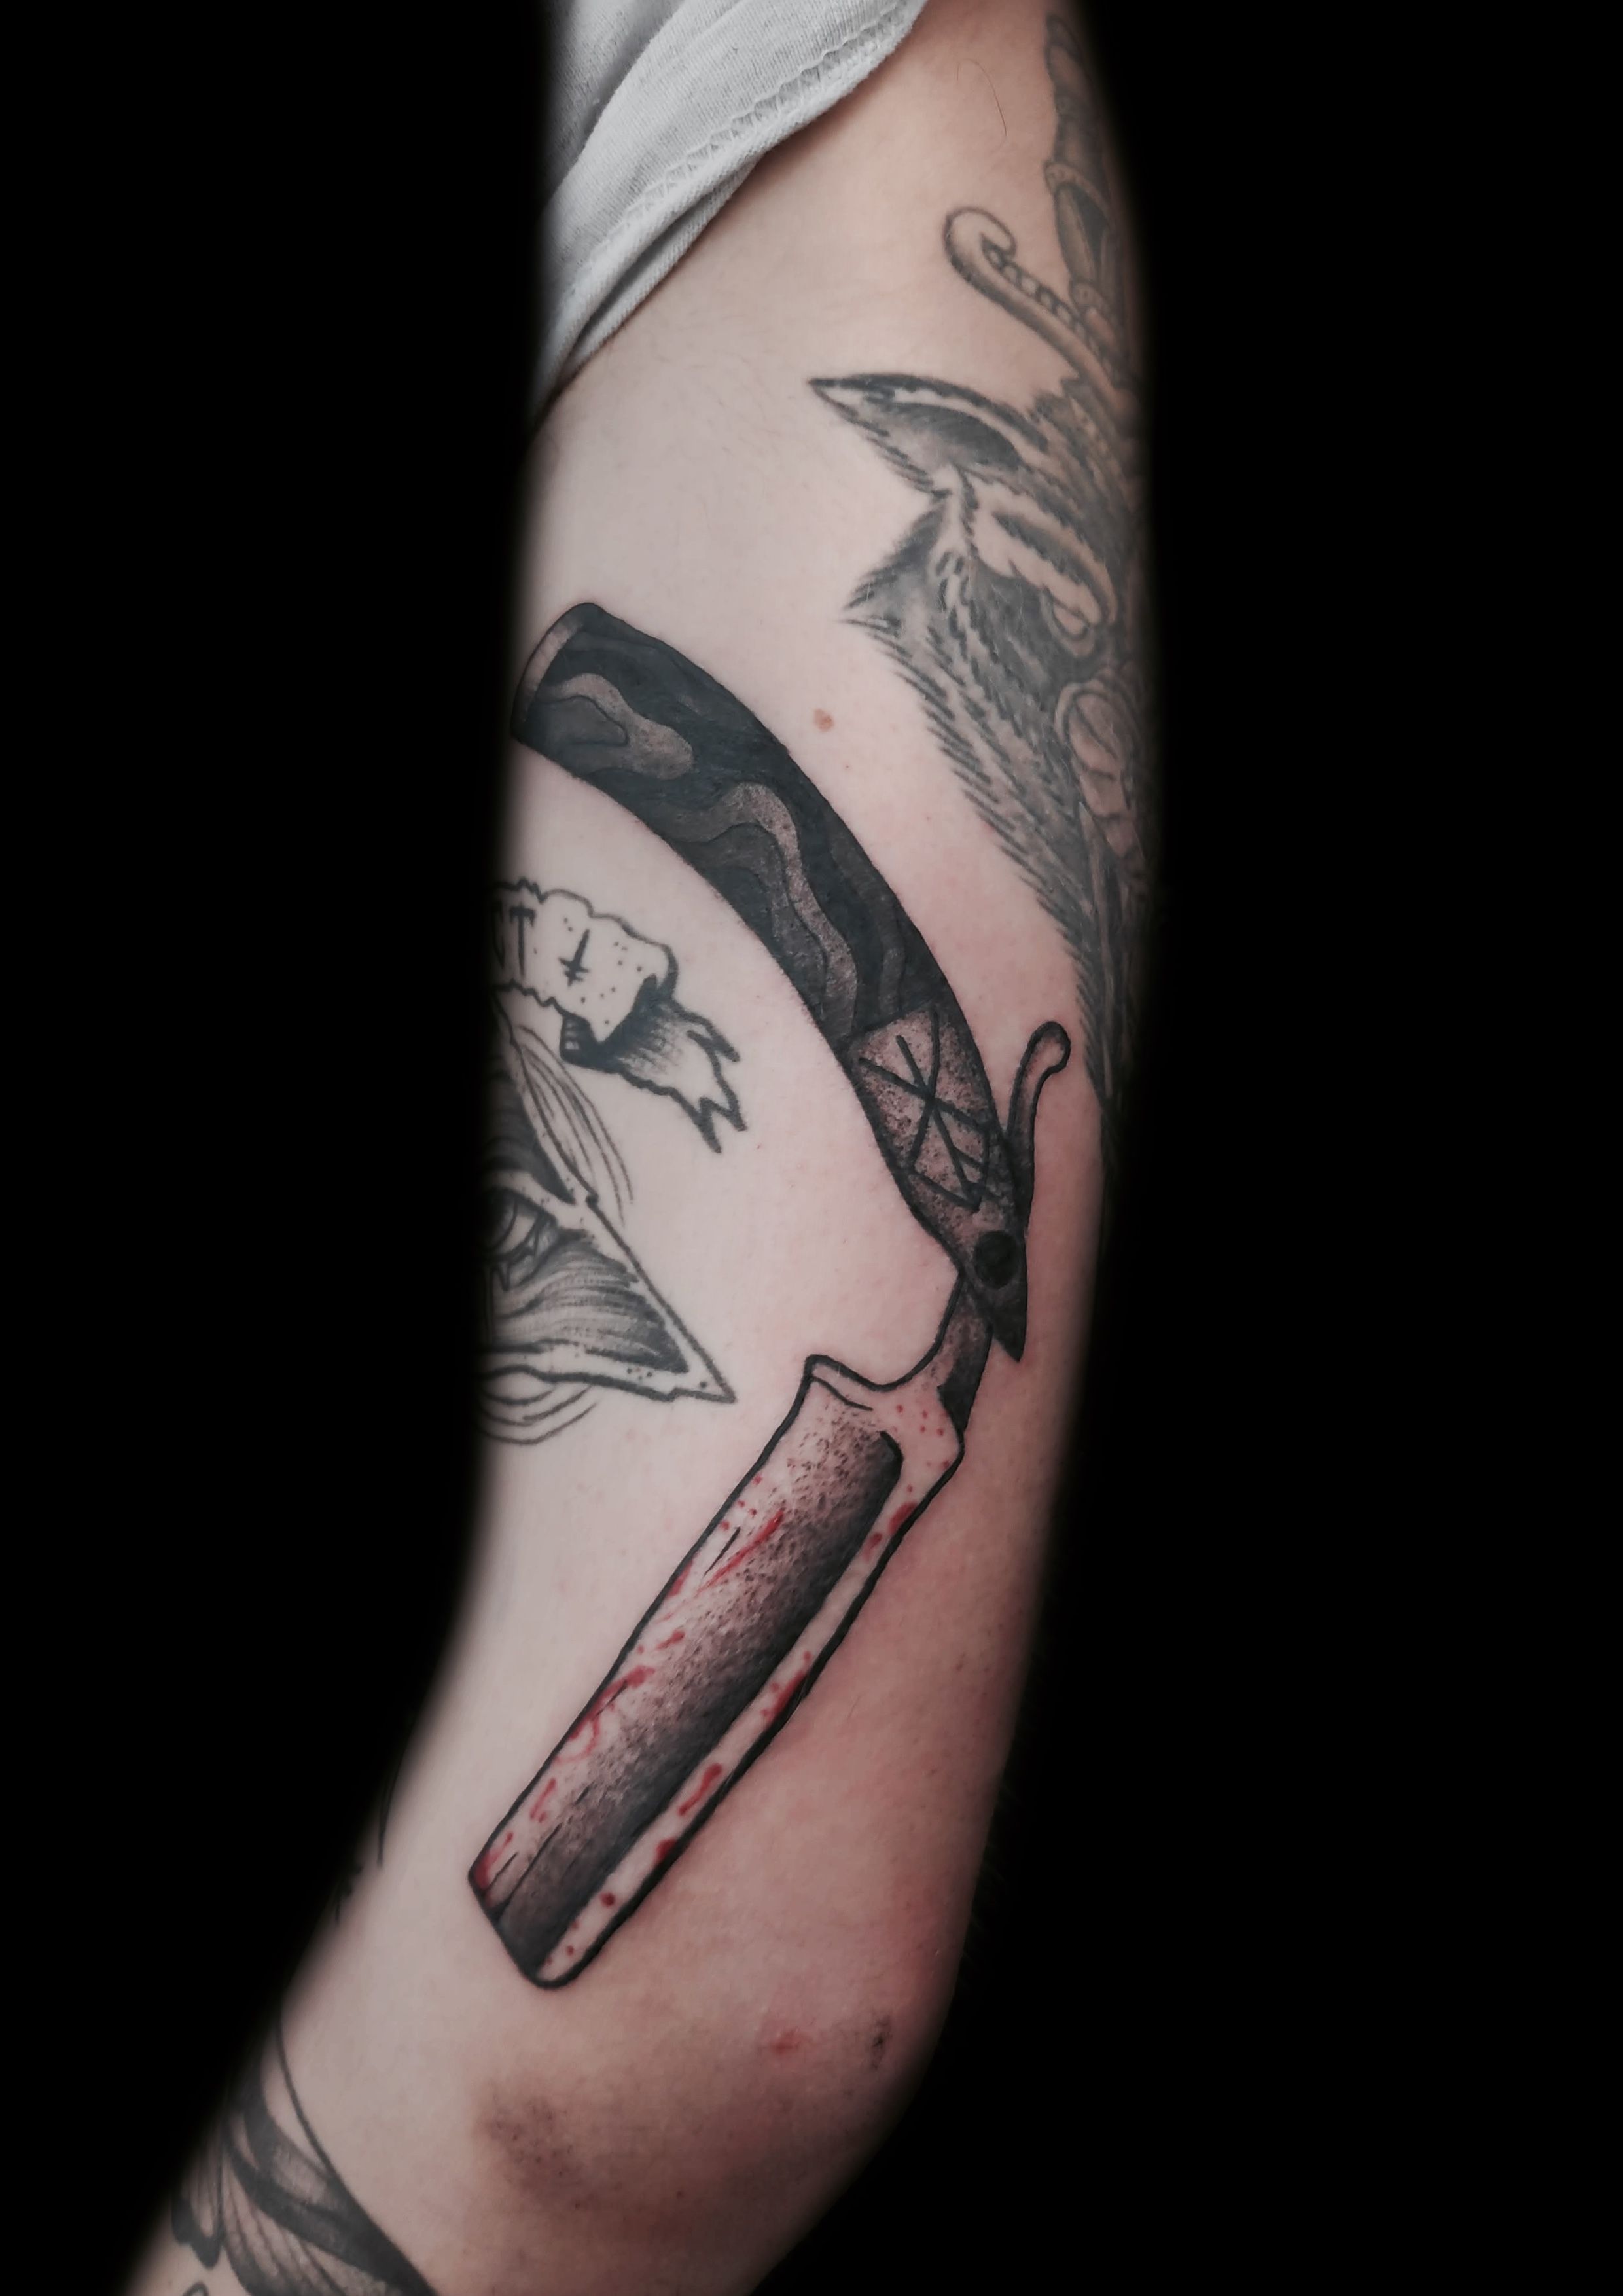 Minimalistic Switchblade Tattoo